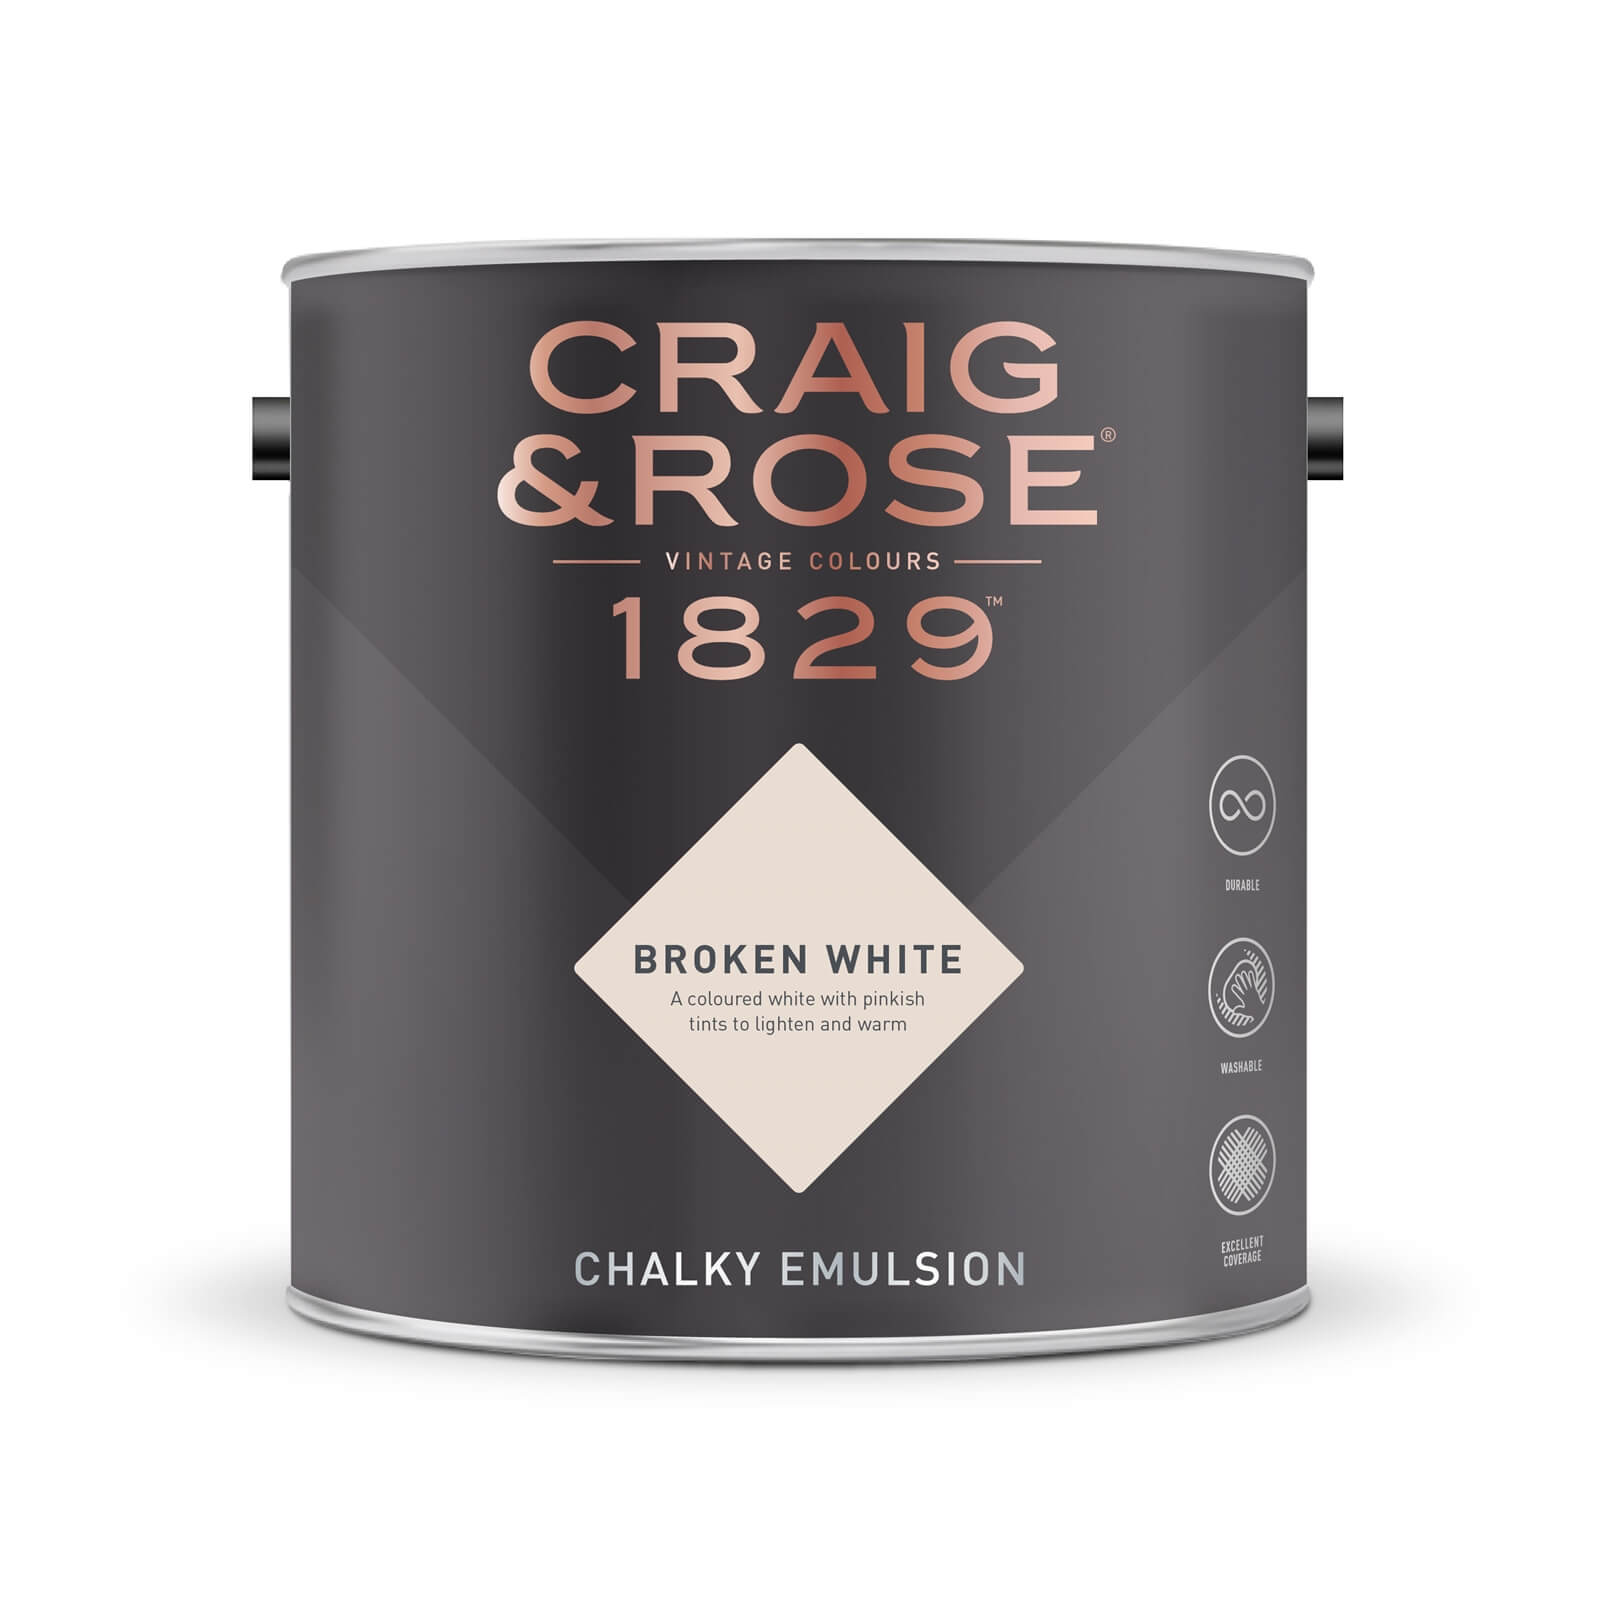 Craig & Rose 1829 Chalky Emulsion Paint Broken White - Tester 50ml